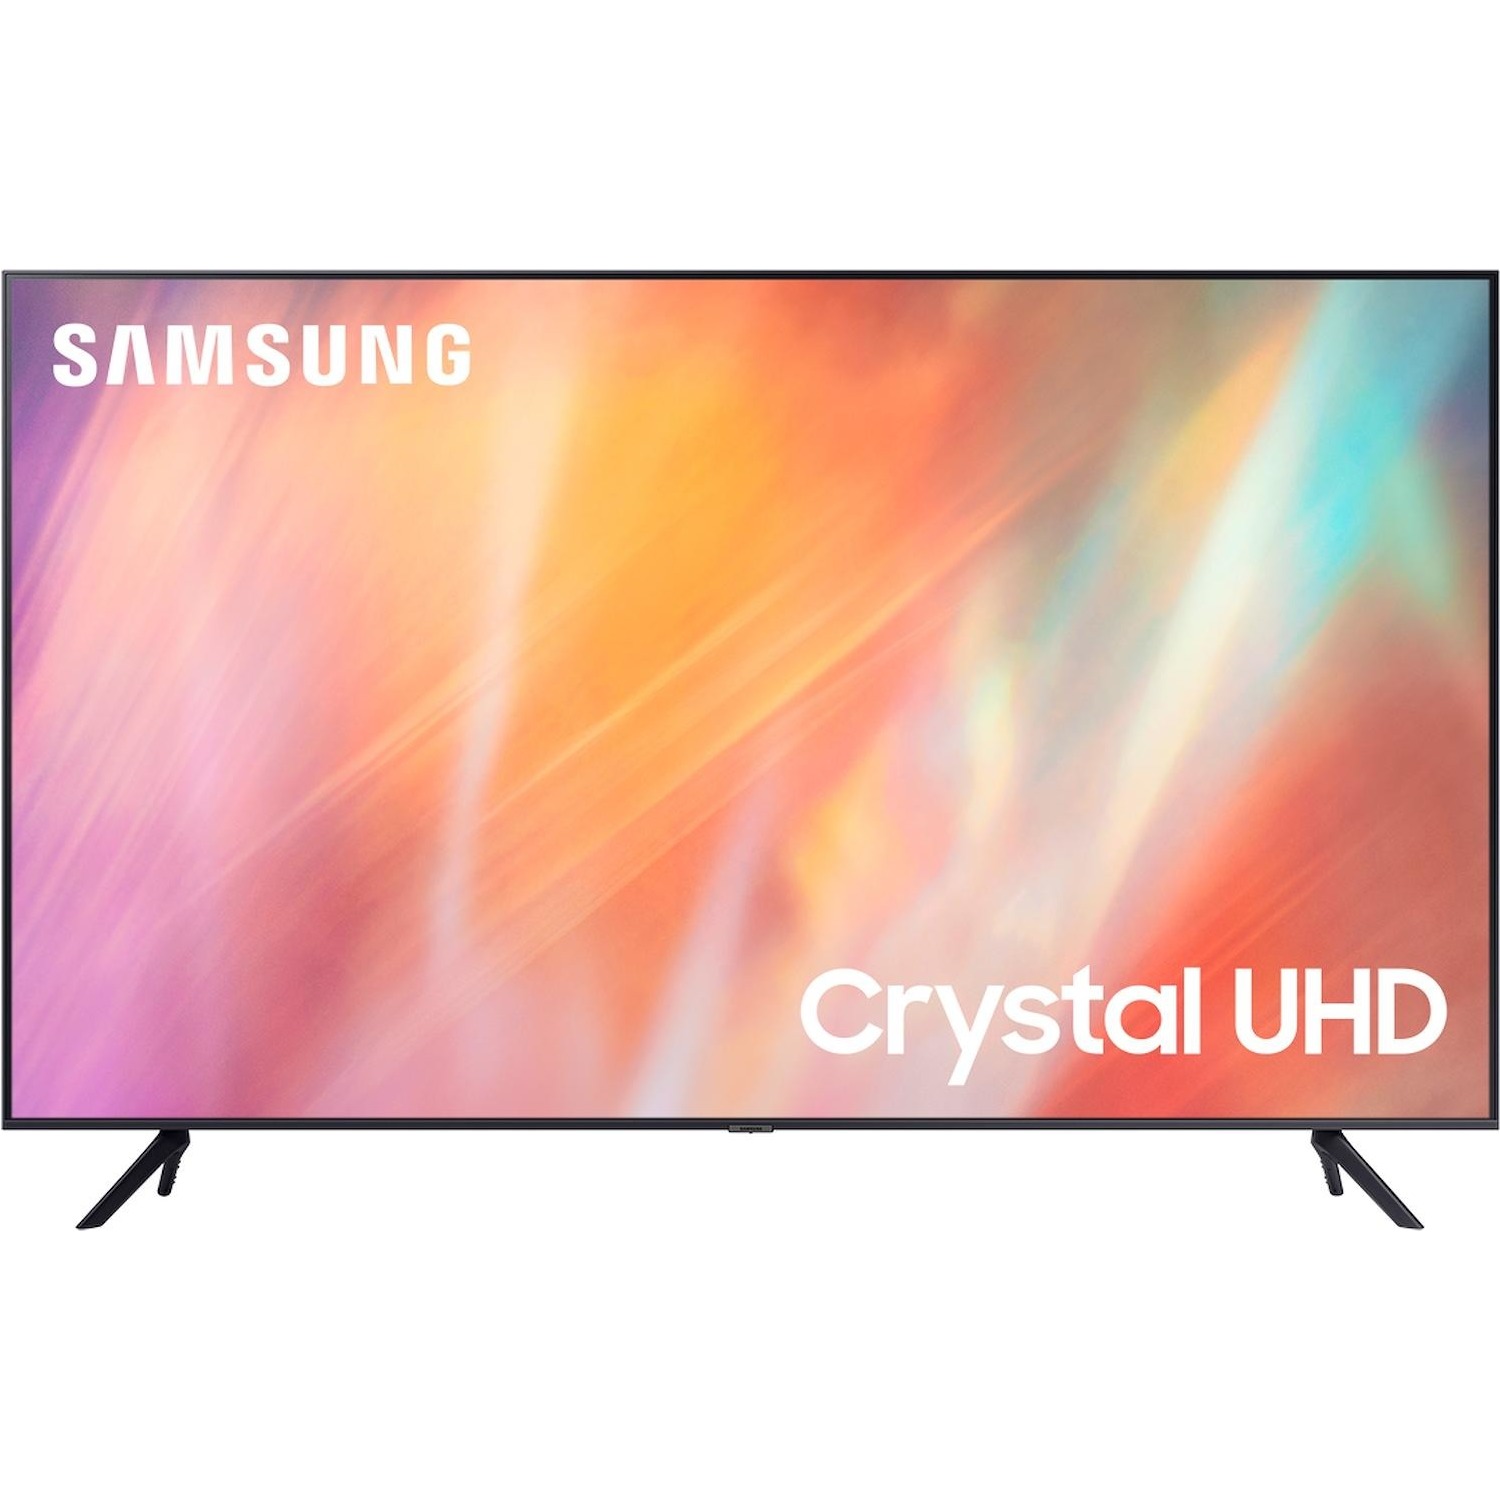 Immagine per TV LED Samsung 43AU7170 Calibrato 4K e FULL HD da DIMOStore